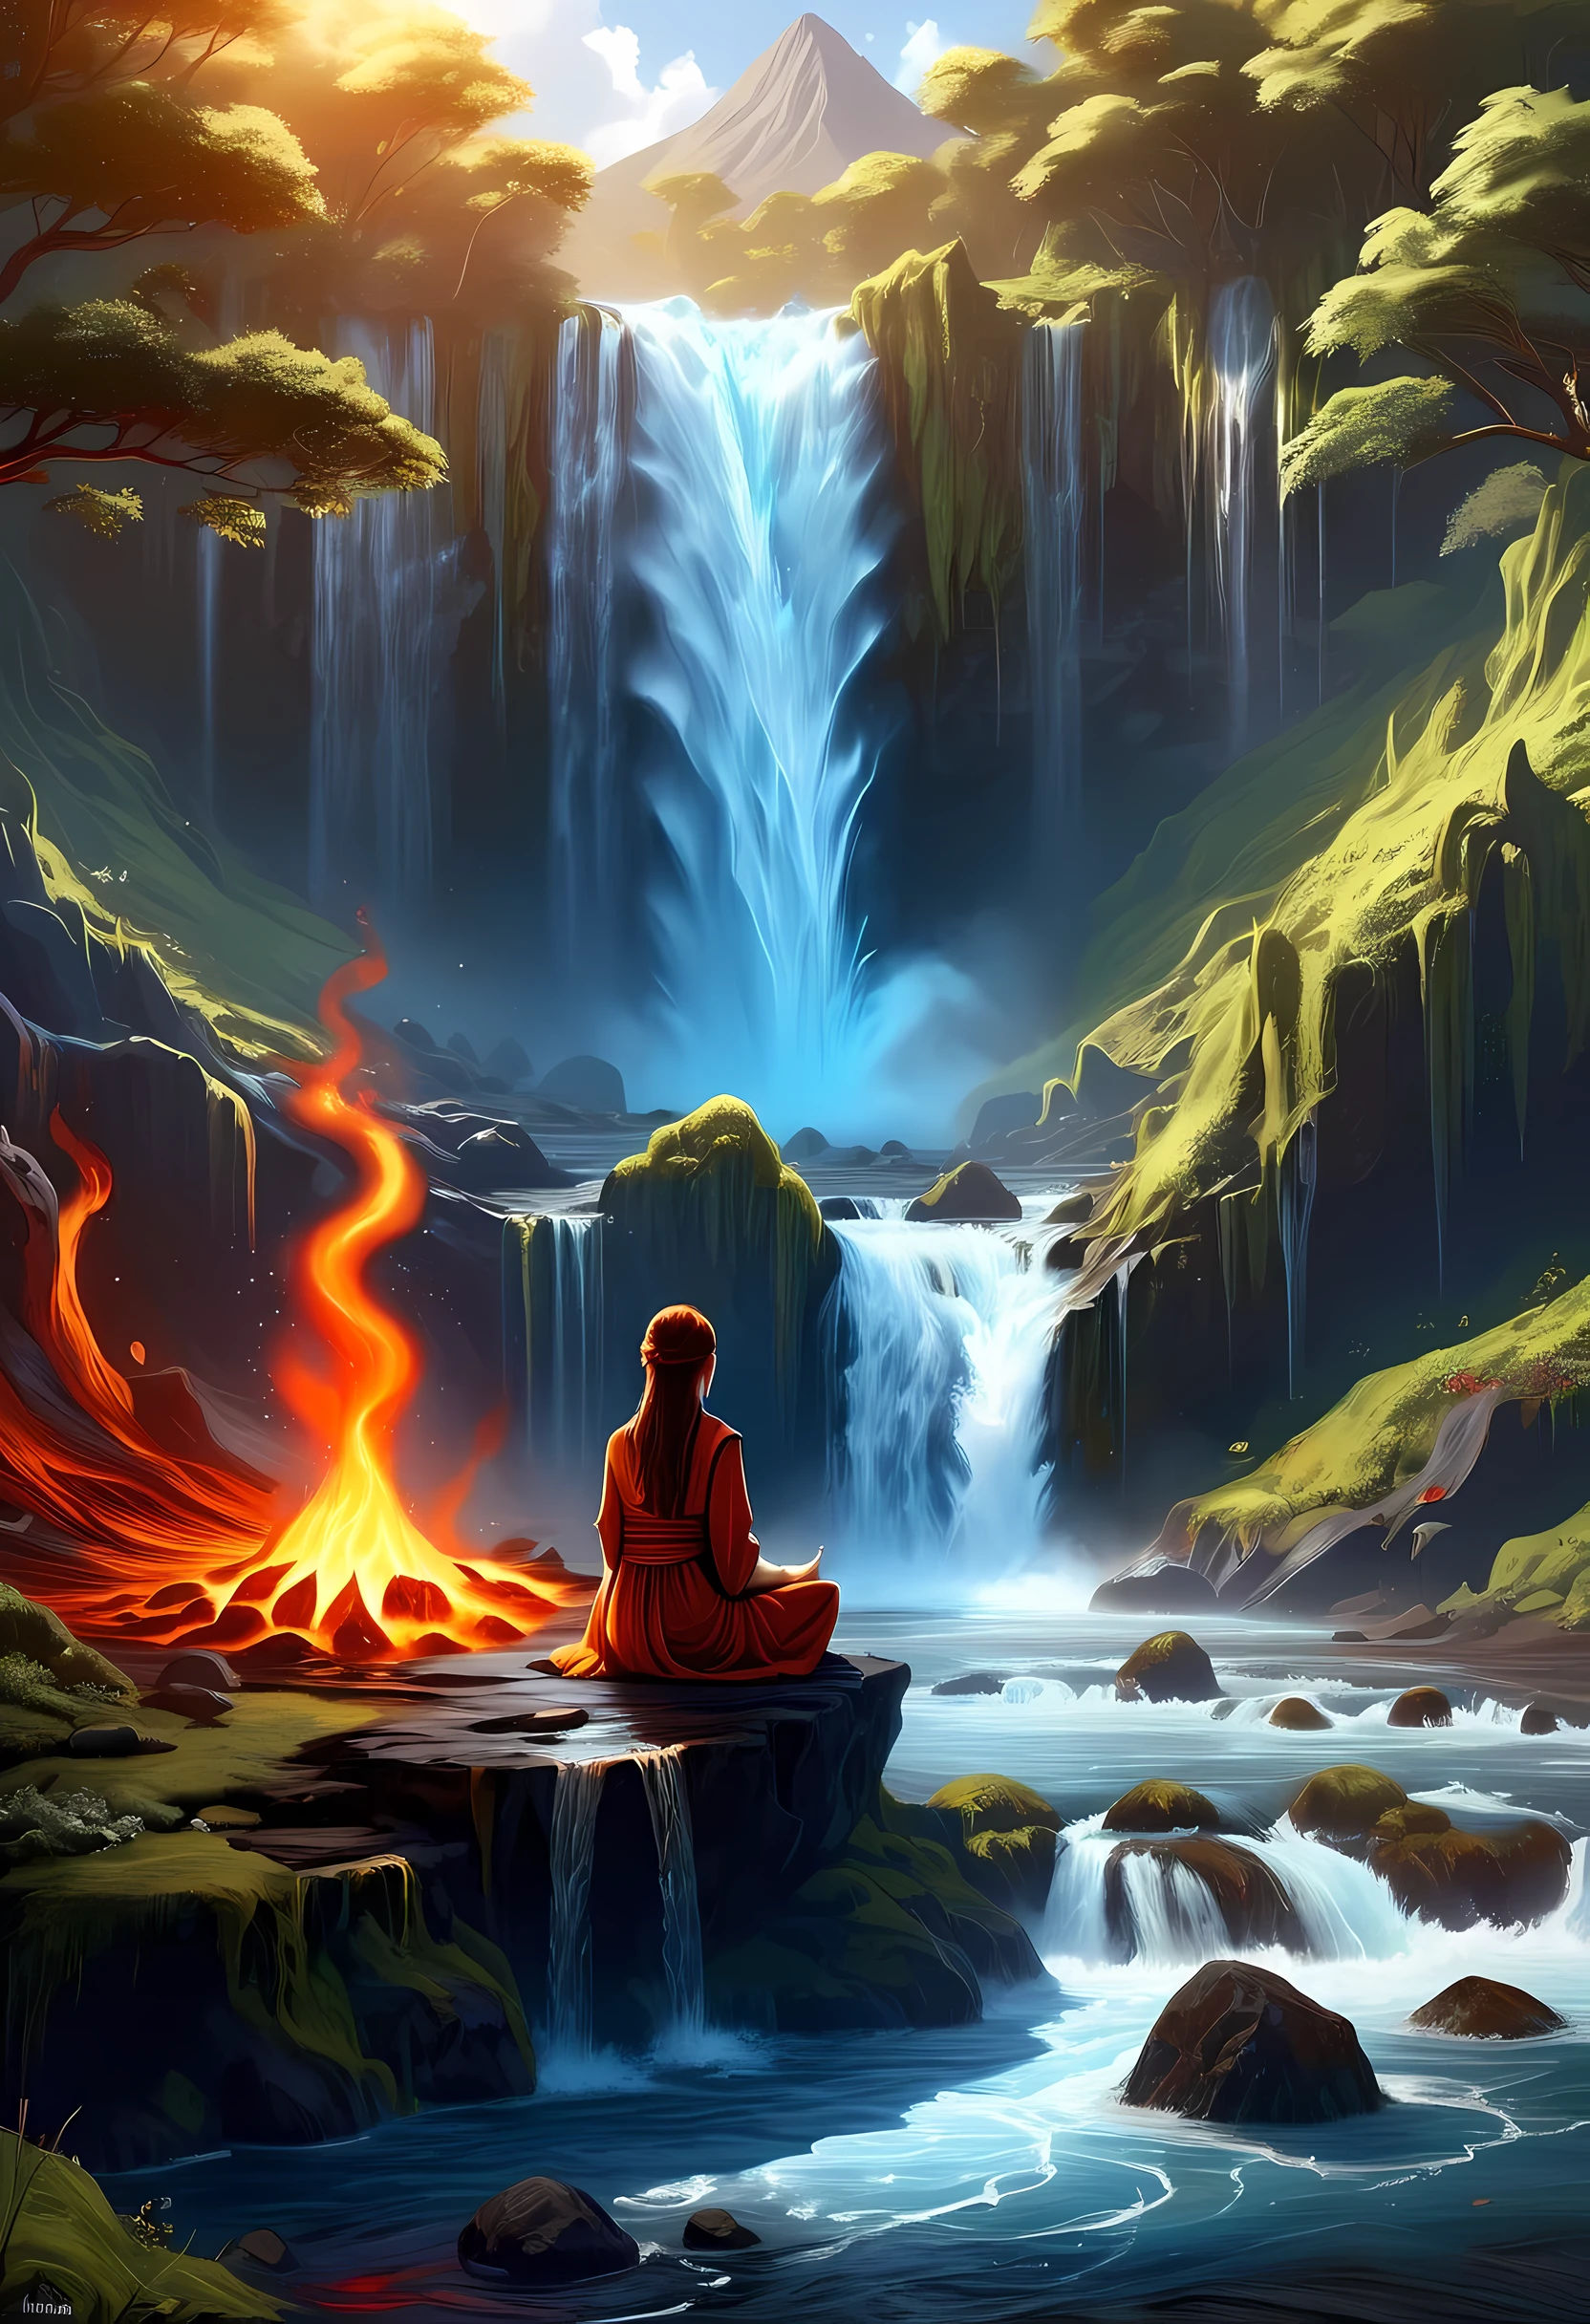 arte de fantasia, fotorrealista, D&Arte D, uma imagem de uma monge sentada e meditando perto de uma cachoeira, Na base da cachoeira,  há uma mulher humana monge vestindo trajes de monge, meditando perto de uma fogueira perto de um (cachoeira de tamanho épico: 1.3), cabelo vermelho, cabelo longo, corpo todo (melhores detalhes, obra de arte, melhor qualidade :1.5), ultra detalhado face (melhores detalhes, obra de arte, melhor qualidade :1.5), ultra feminine (melhores detalhes, obra de arte, melhor qualidade :1.5), requintado lindo (melhores detalhes, obra de arte, melhor qualidade :1.5) cabelo vermelho, cabelo longo, Cabelo ondulado, pele pálida, olhos azuis, olhos intensos, água descendo de um penhasco vulcânico, Quedas d'água de vários níveis, vários pools criados em diferentes níveis, formando novas cachoeiras, água em cascata em um (grande piscina de lava: 1.3) vapor subindo, água límpida em muitos tons de azul e azul caindo, ultra melhor realista, melhores detalhes, melhor qualidade, 16k, [ultra detalhado], obra de arte, melhor qualidade, (extremamente detalhado), foto ultra ampla, fotorrealismo, profundidade de campo, pintura hiper realista, faize 